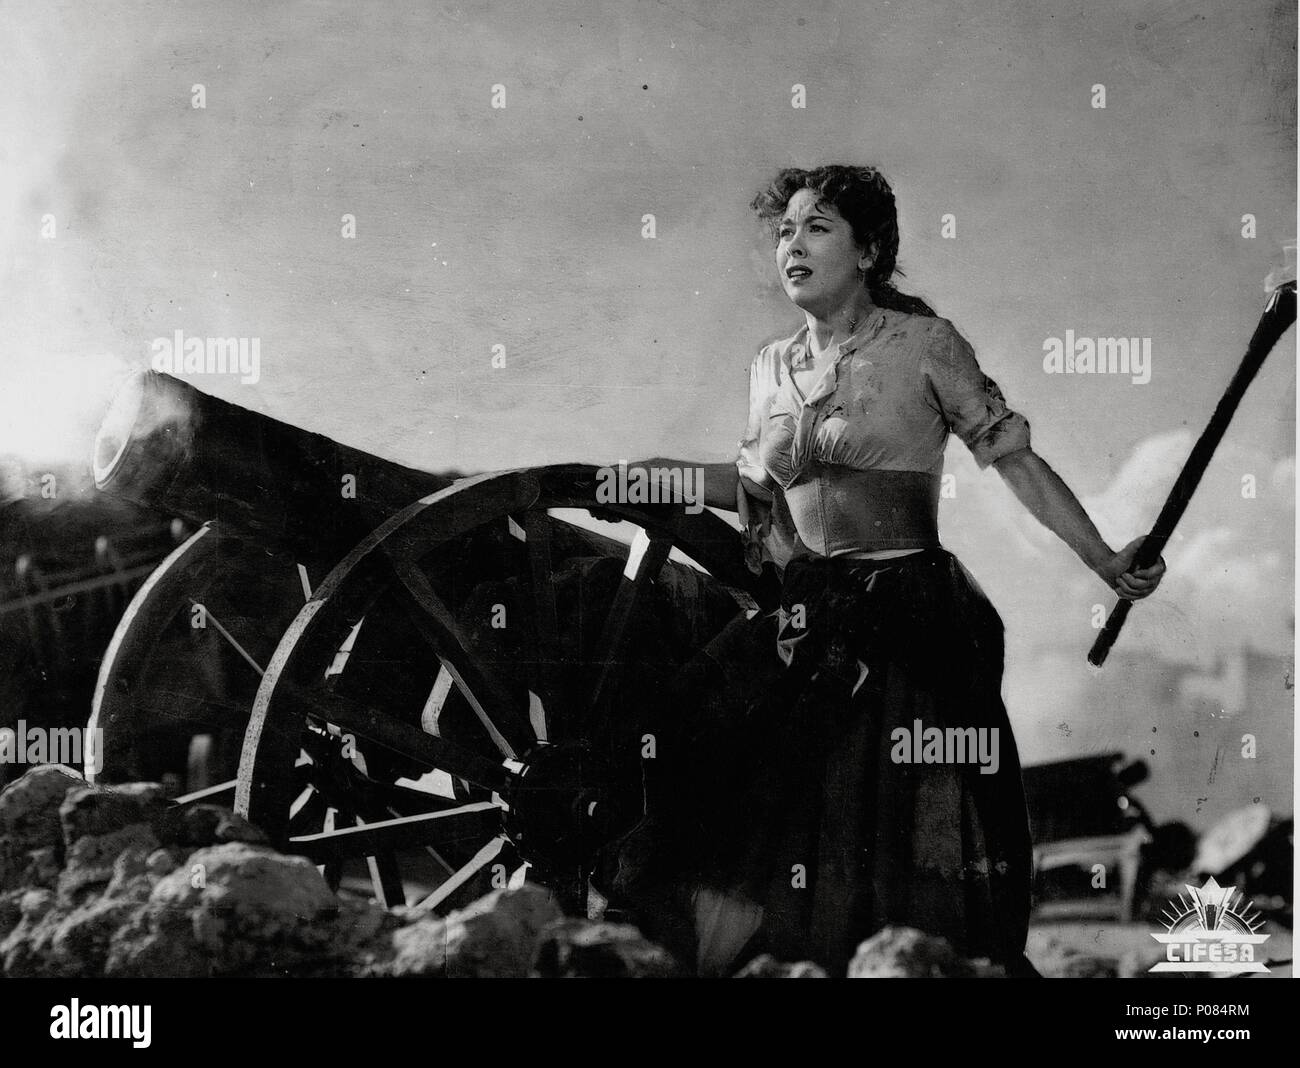 Original Film Titel: AGUSTINA de Aragón. Englischer Titel: Belagerung, die. Regisseur: JUAN DE ORDUÑA. Jahr: 1950. Stars: AURORA BAUTISTA. Credit: CIFESA/Album Stockfoto